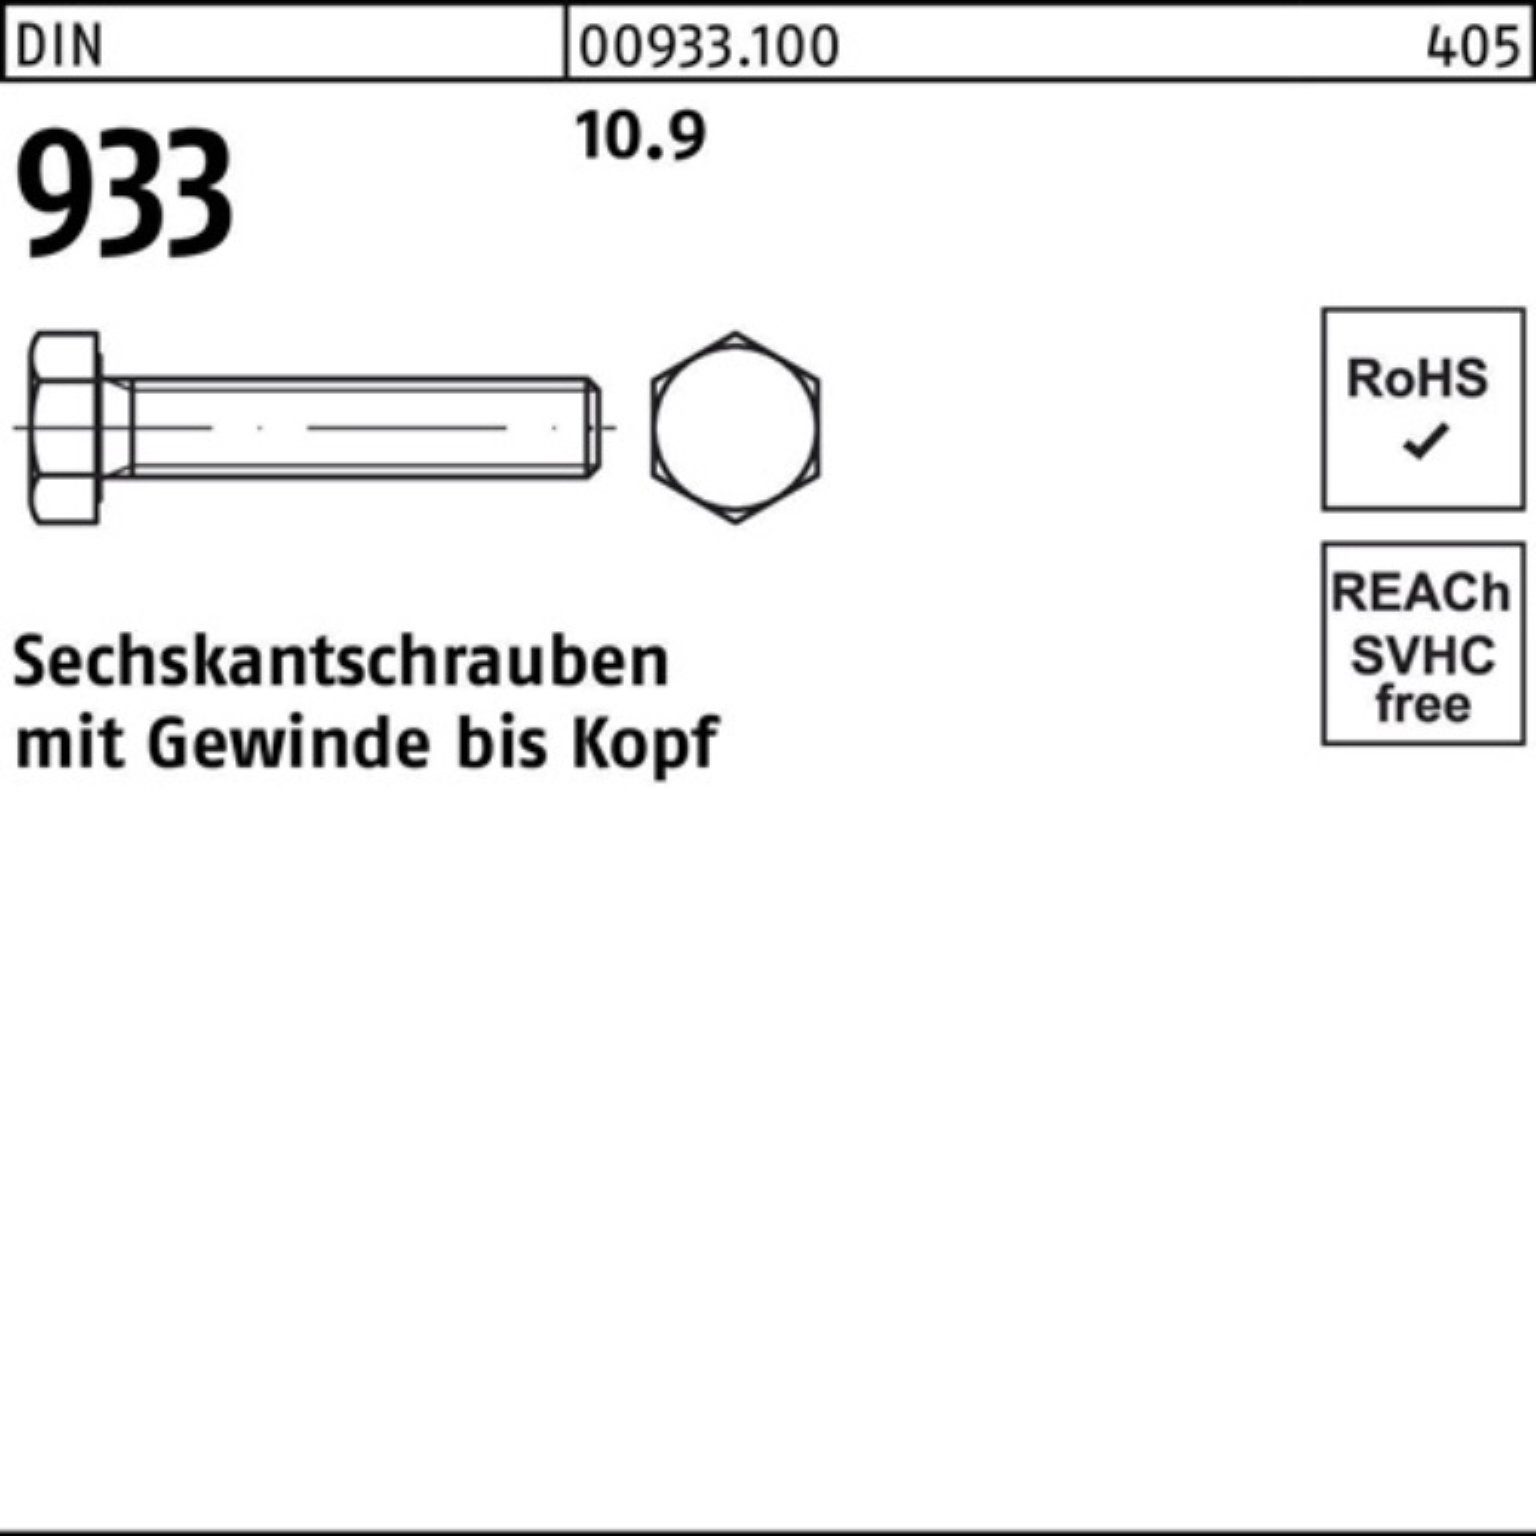 933 Sechskantschraube Sechskantschraube Reyher M20x 10.9 180 DIN 25 100er VG Stück Pack 93 DIN